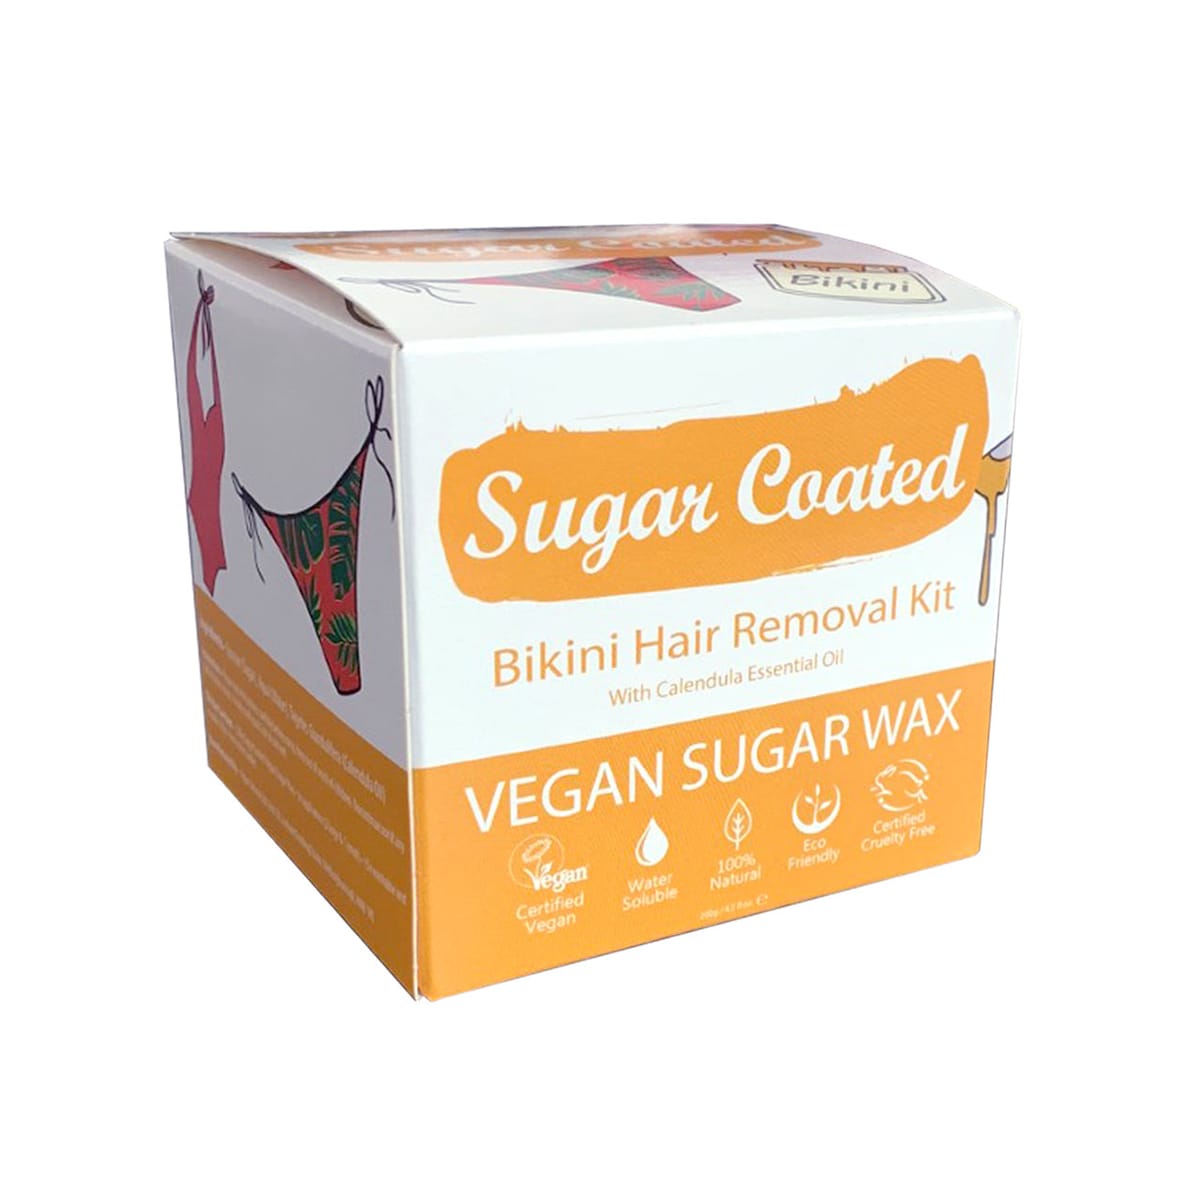 Sugar Coated Bikini Hair Removal Kit 200g